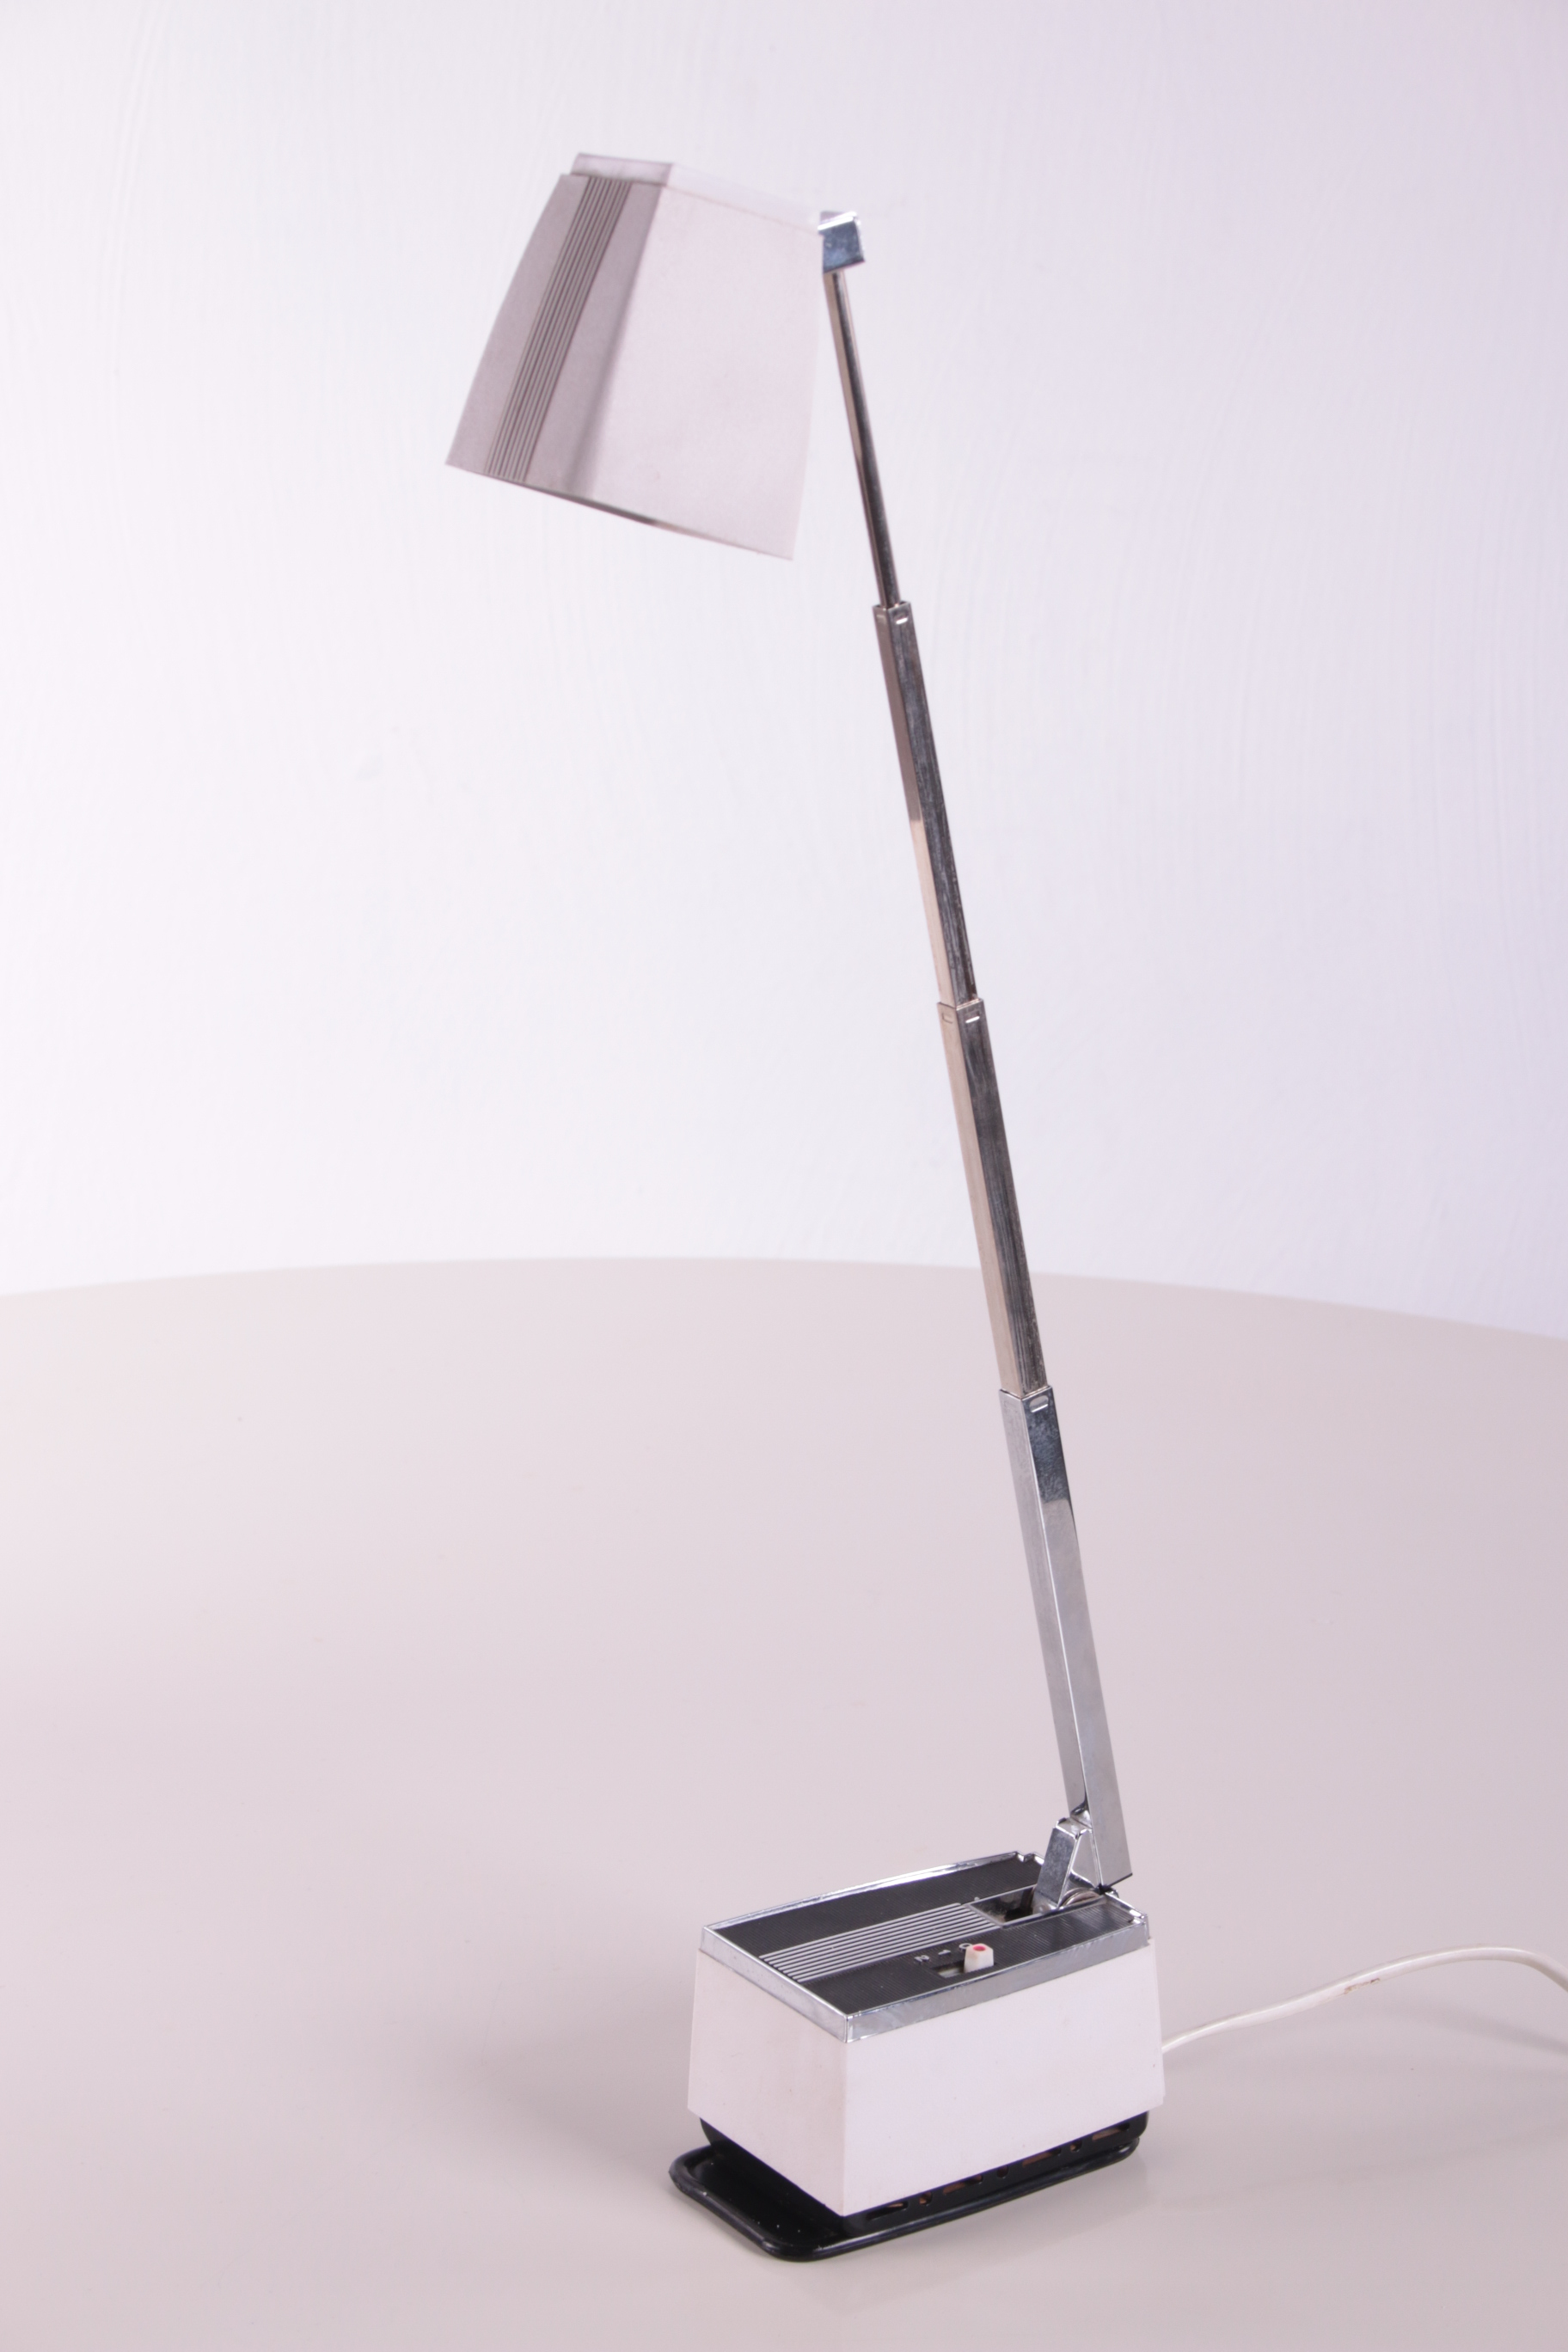 Bureau lampje Deens ontwerp jaren60 zijkant licht uit